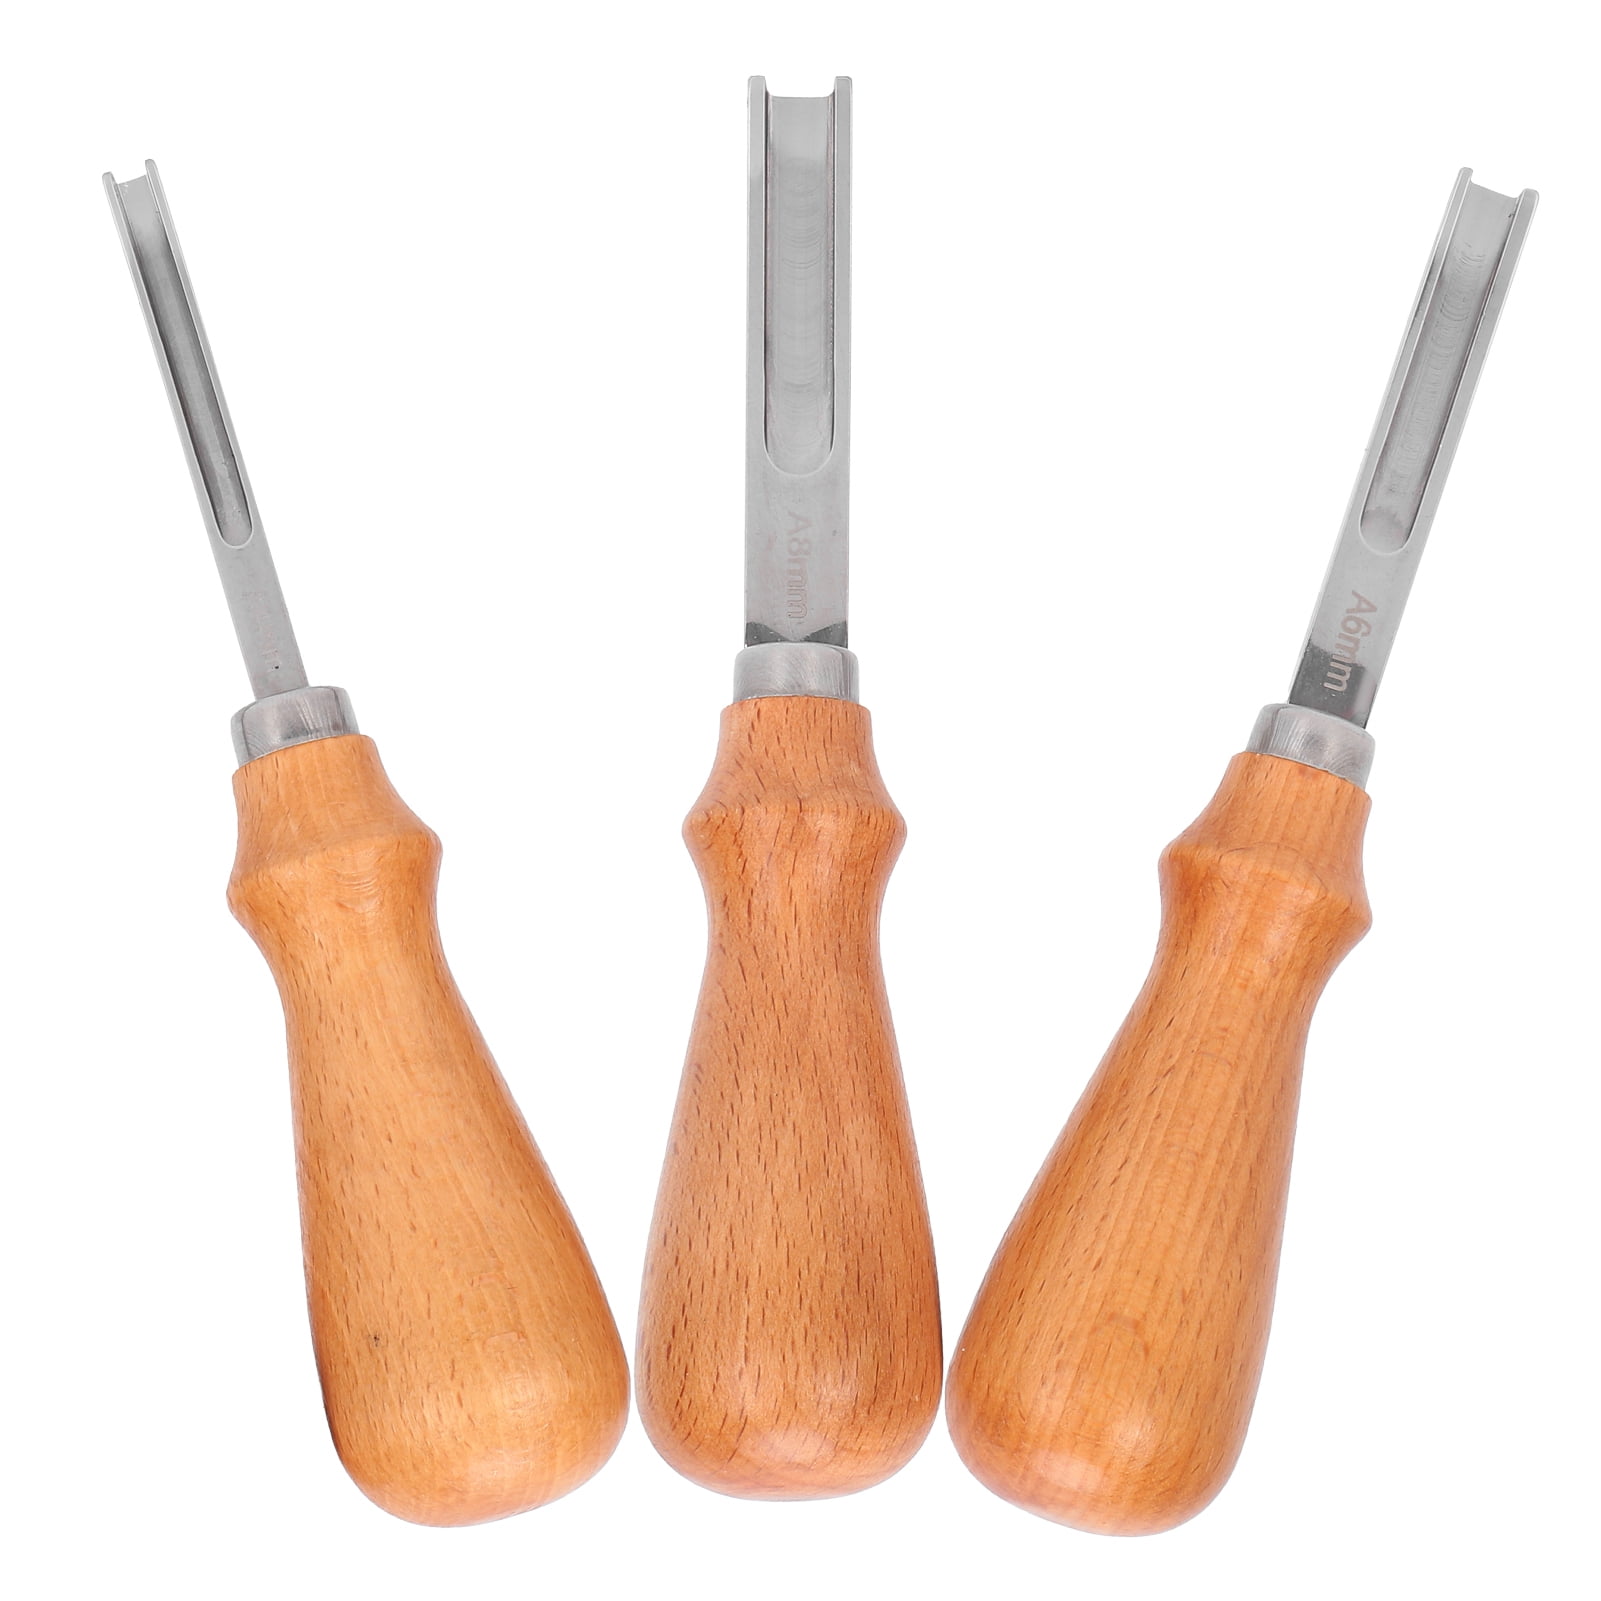 4Pcs/Set en cuir outil de coupe de bricolage cut edge débridage Carving Cutter Tools 